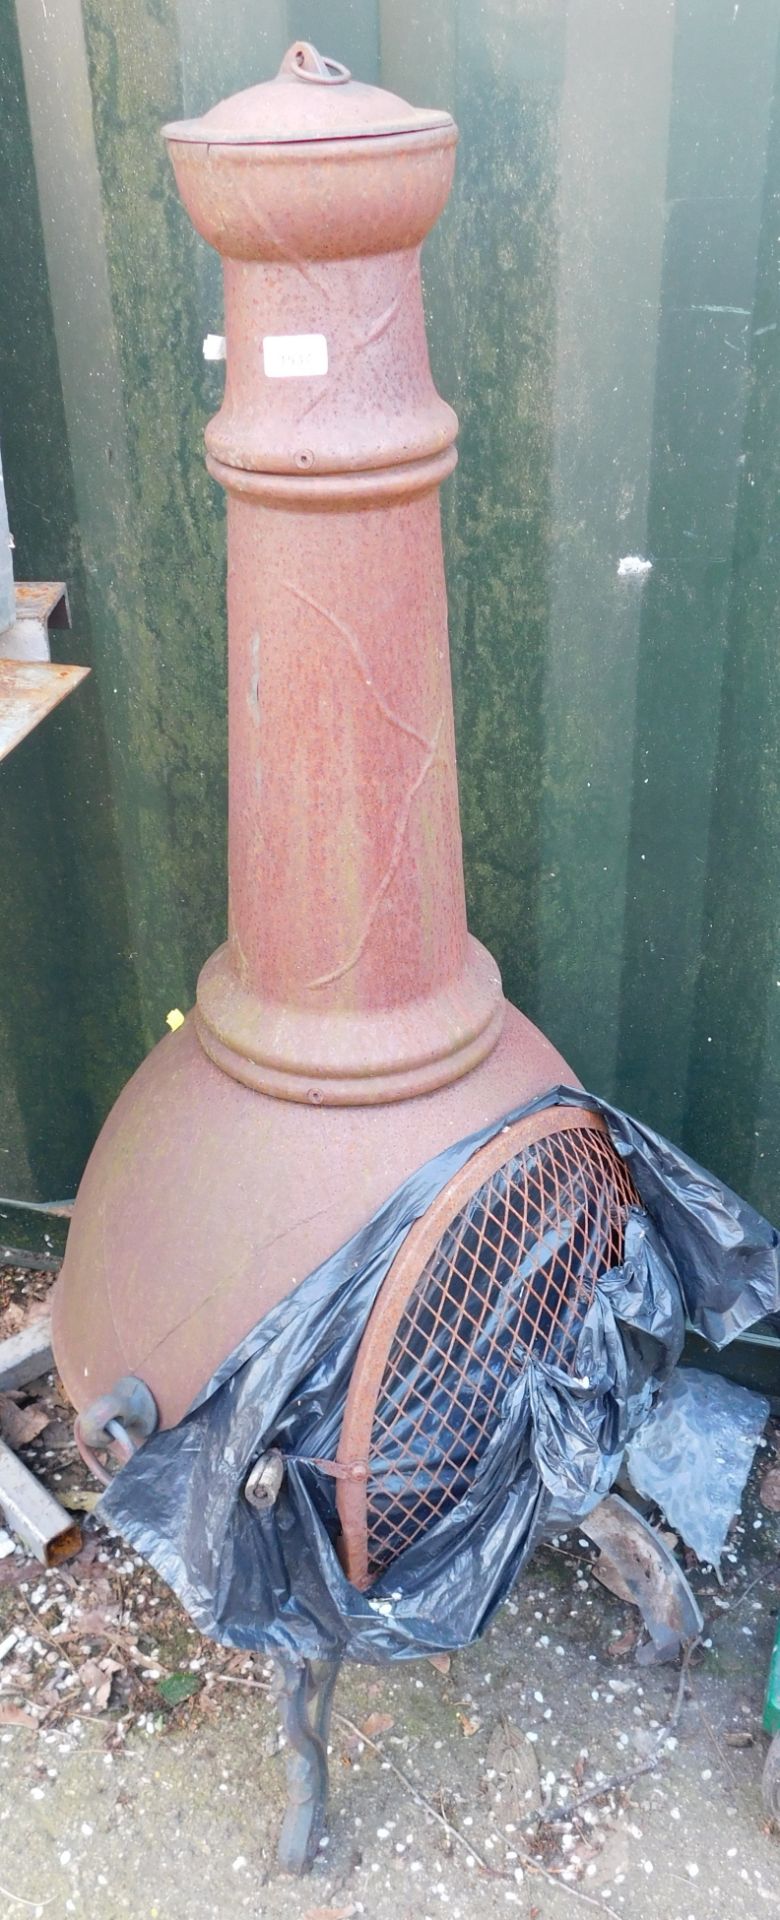 A cast iron garden chiminea.